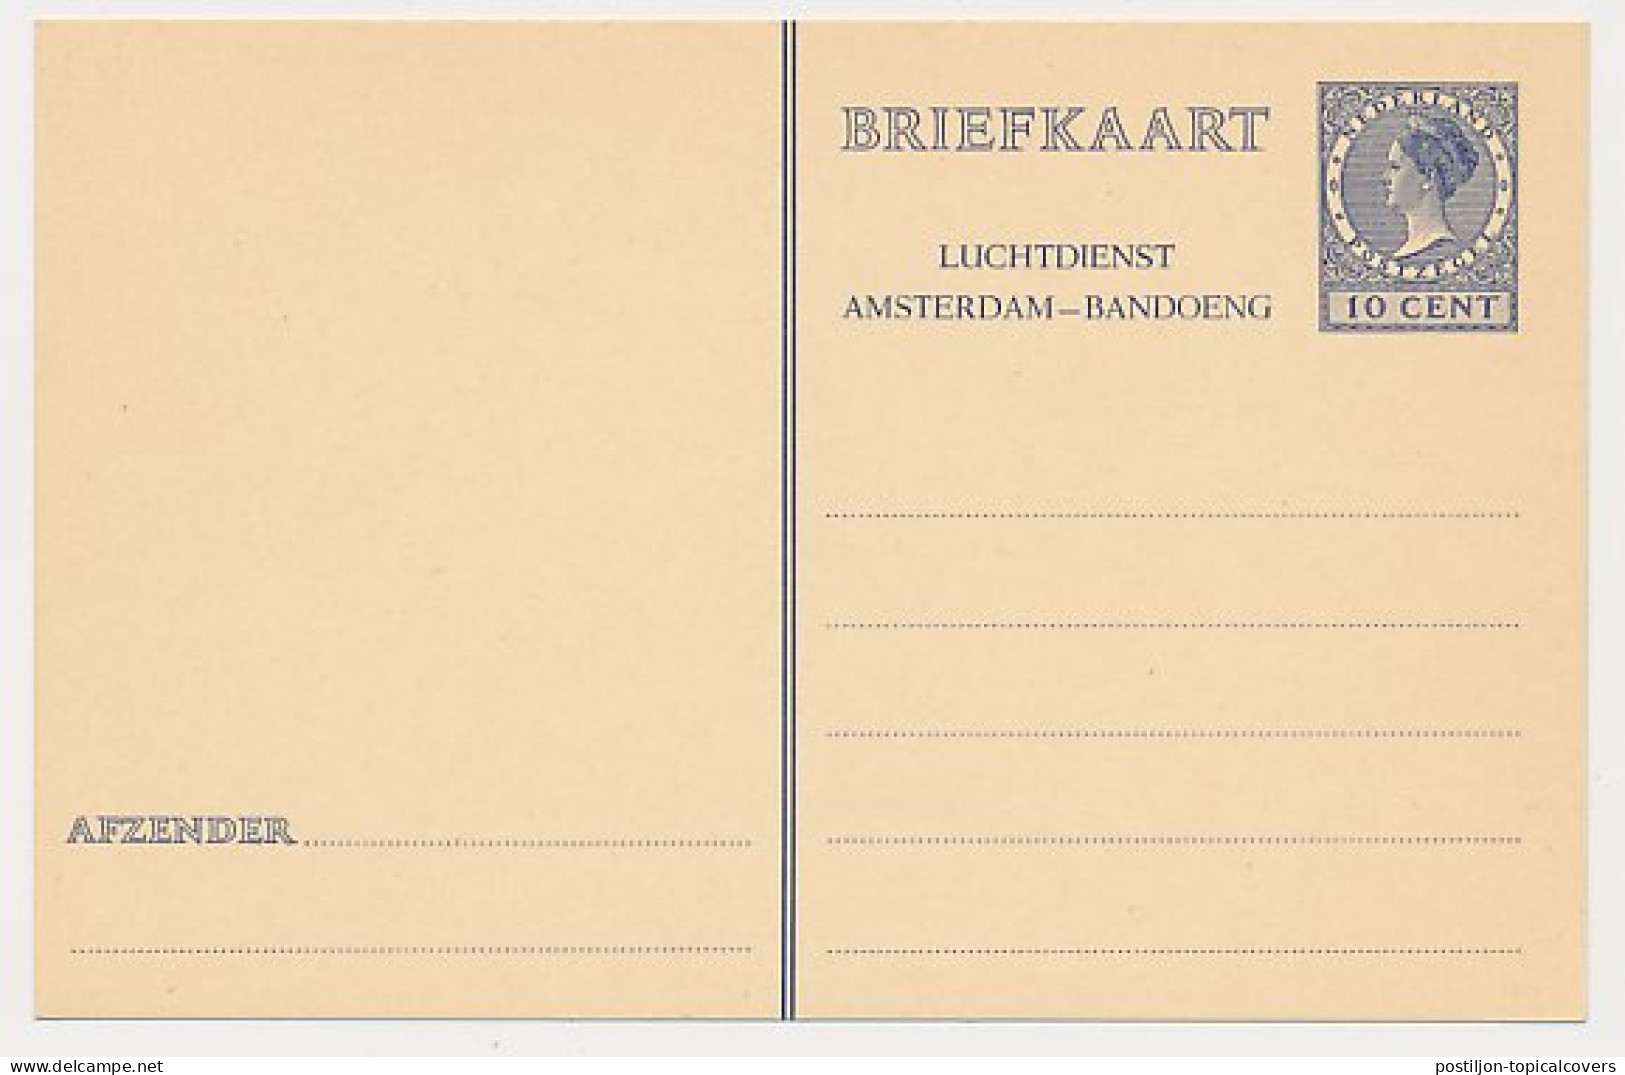 Briefkaart G. 241 - Entiers Postaux